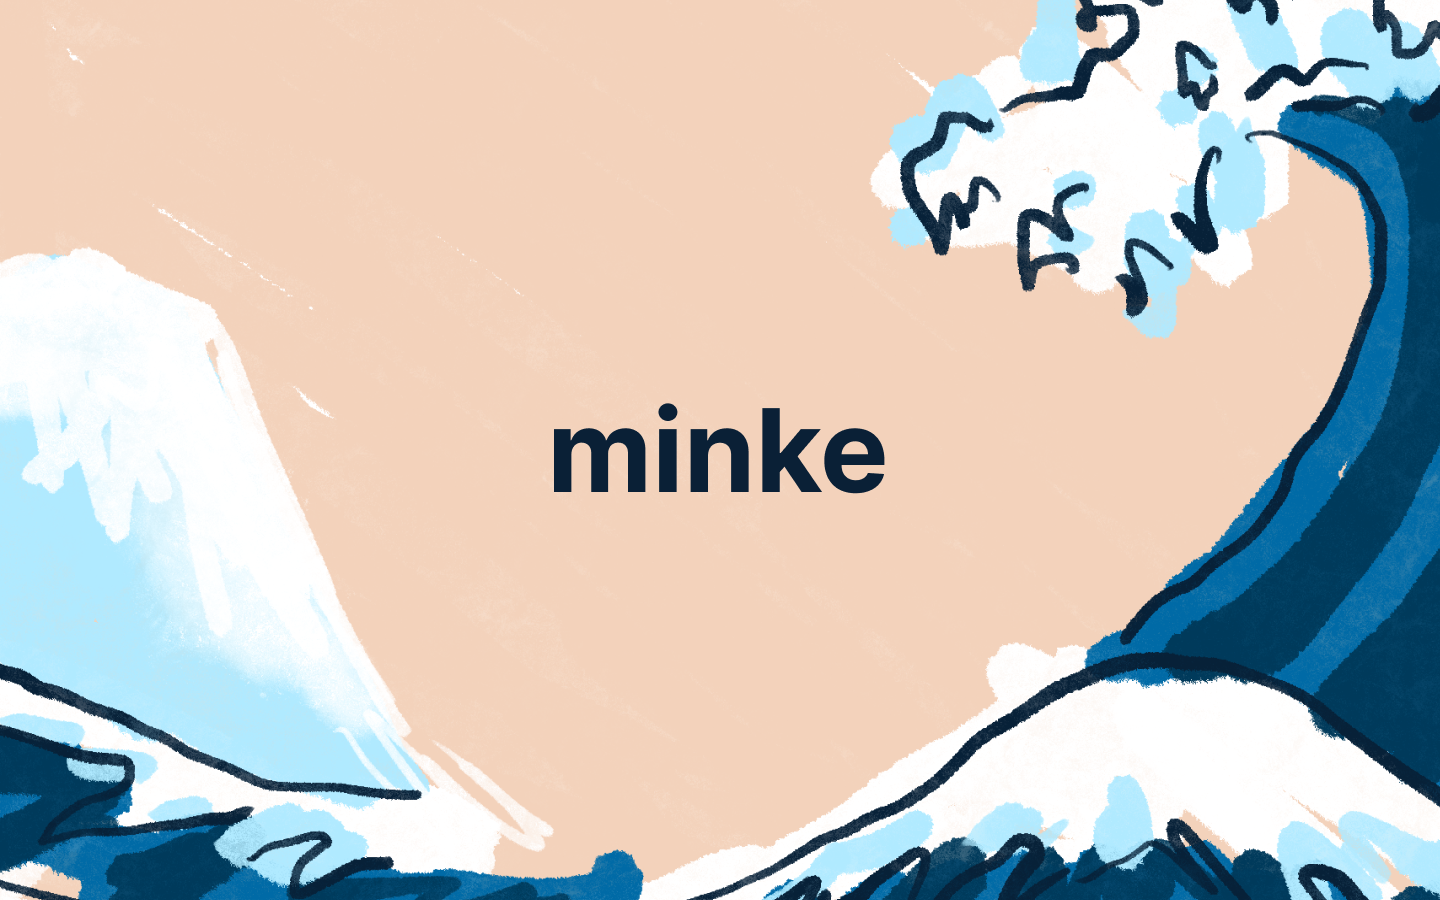 about minke